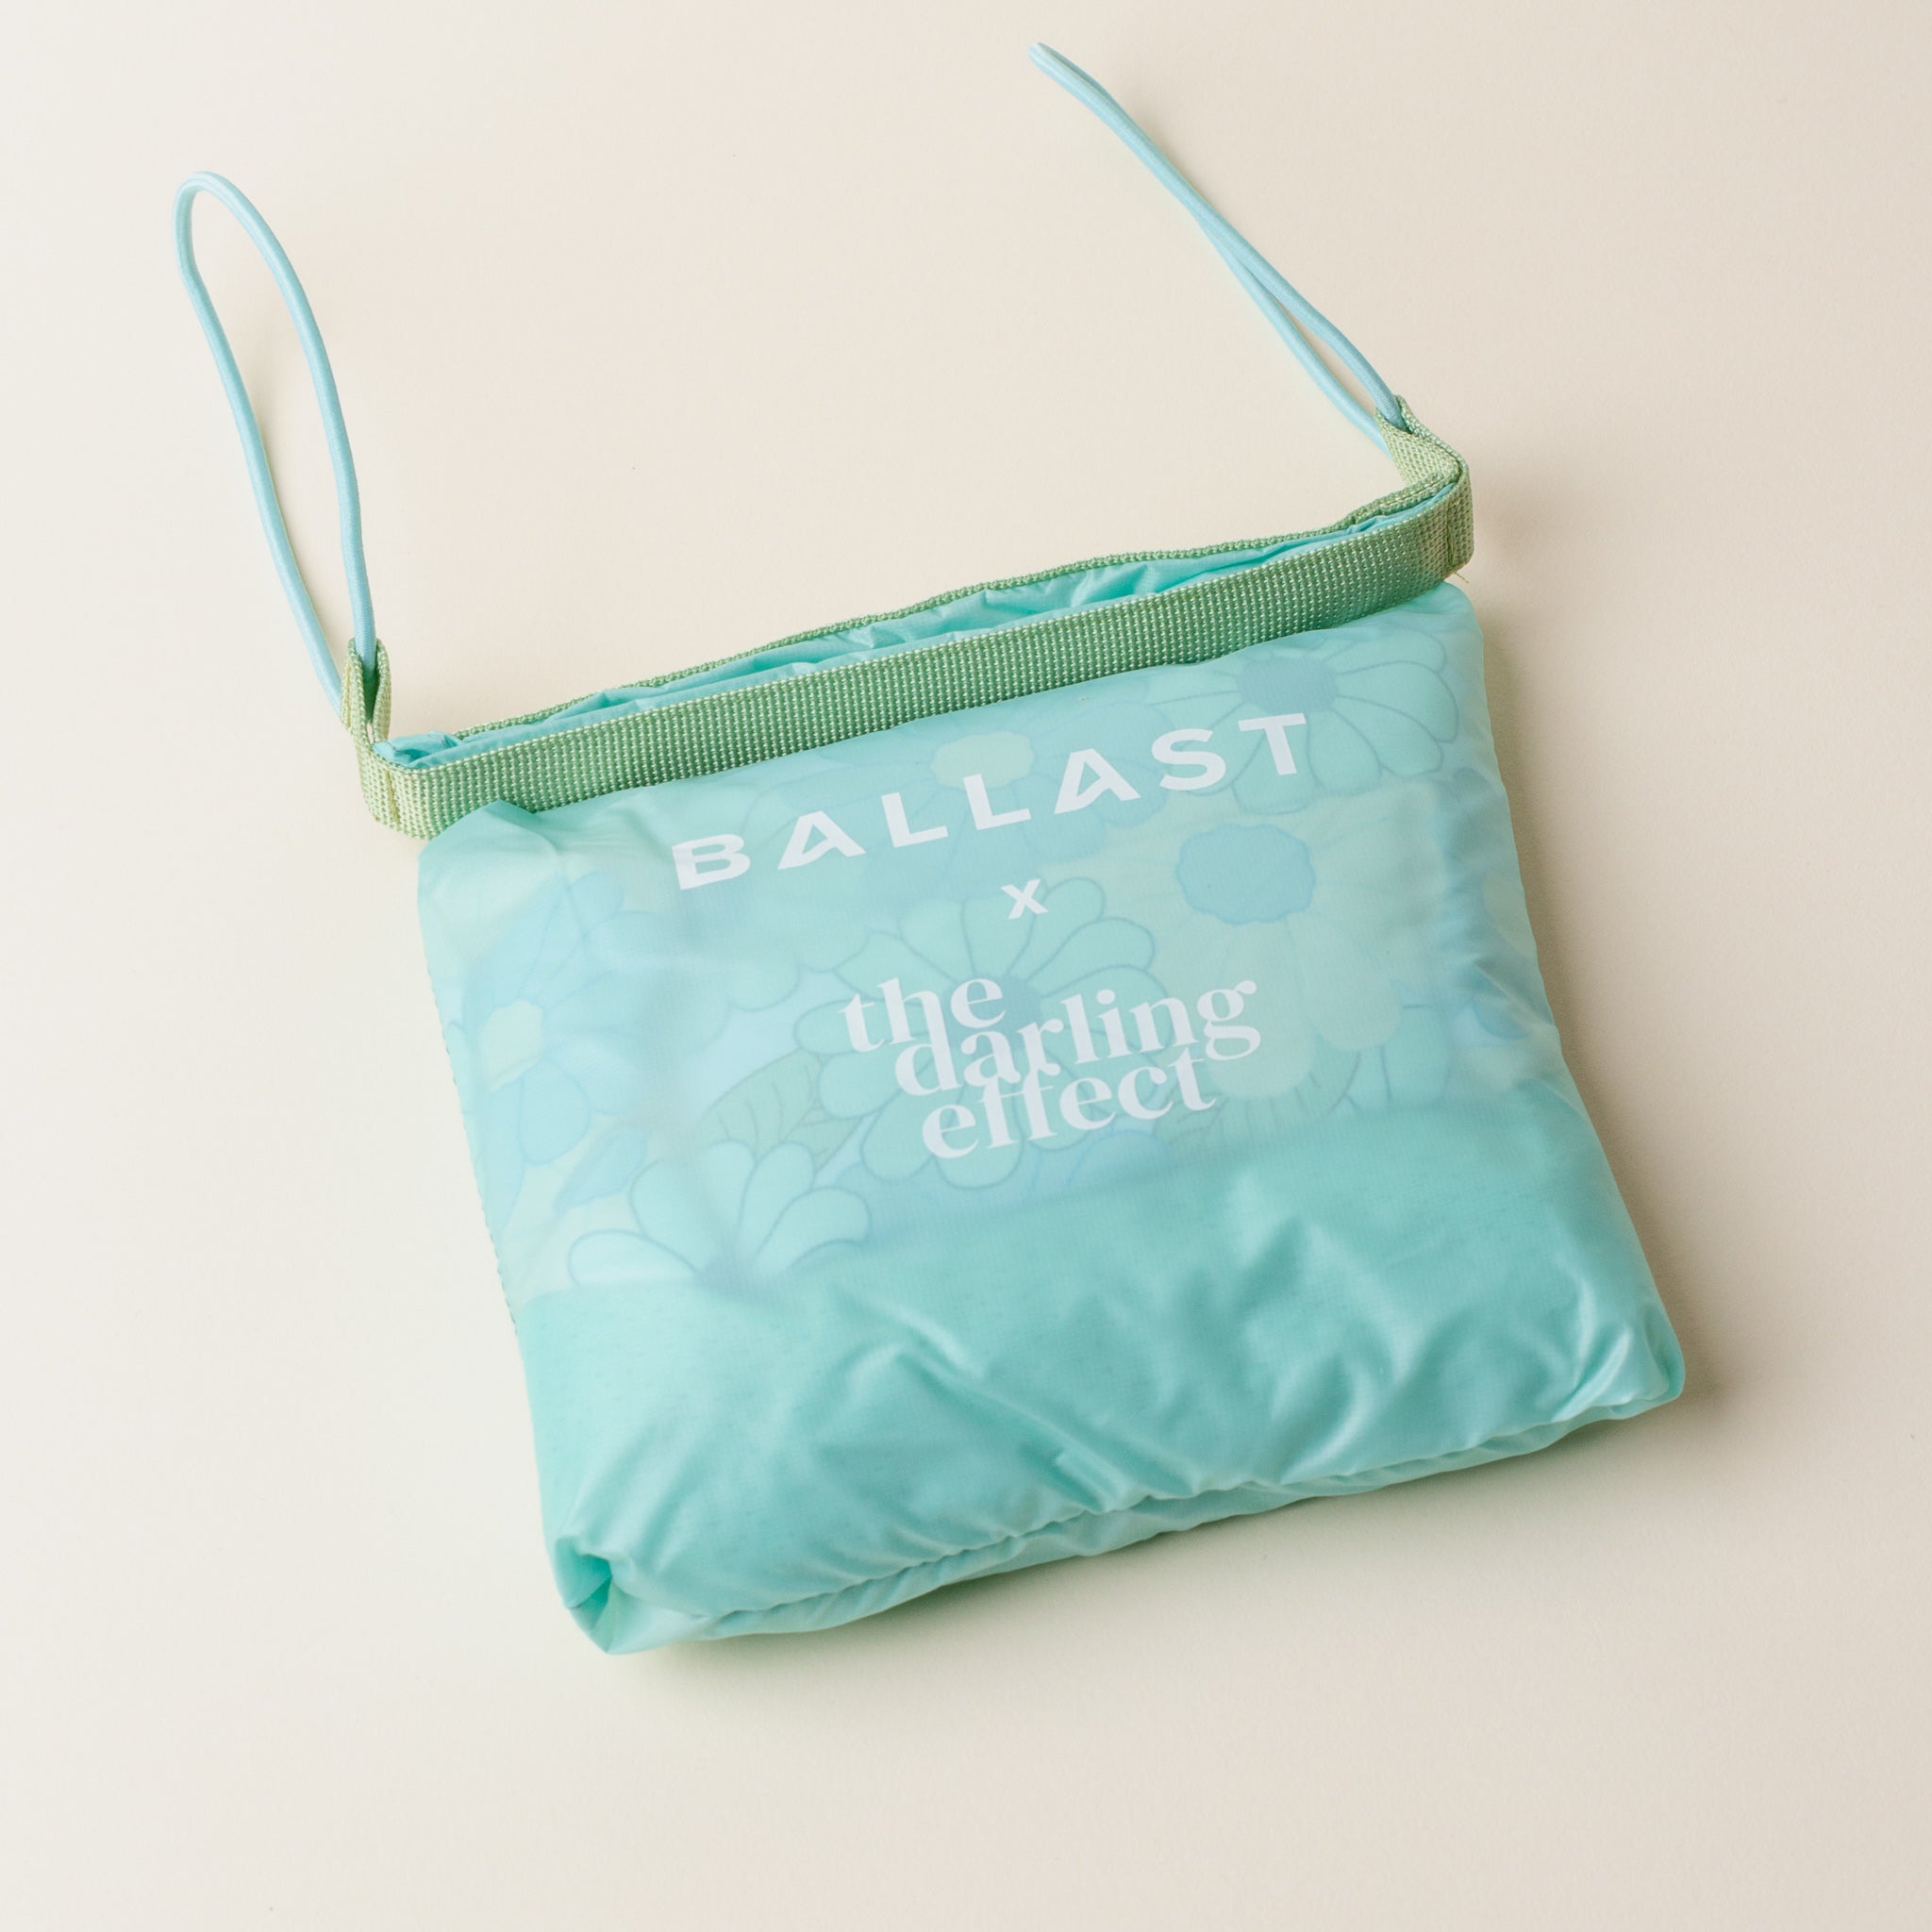 Ballast x Darling Effect Beach Pillow